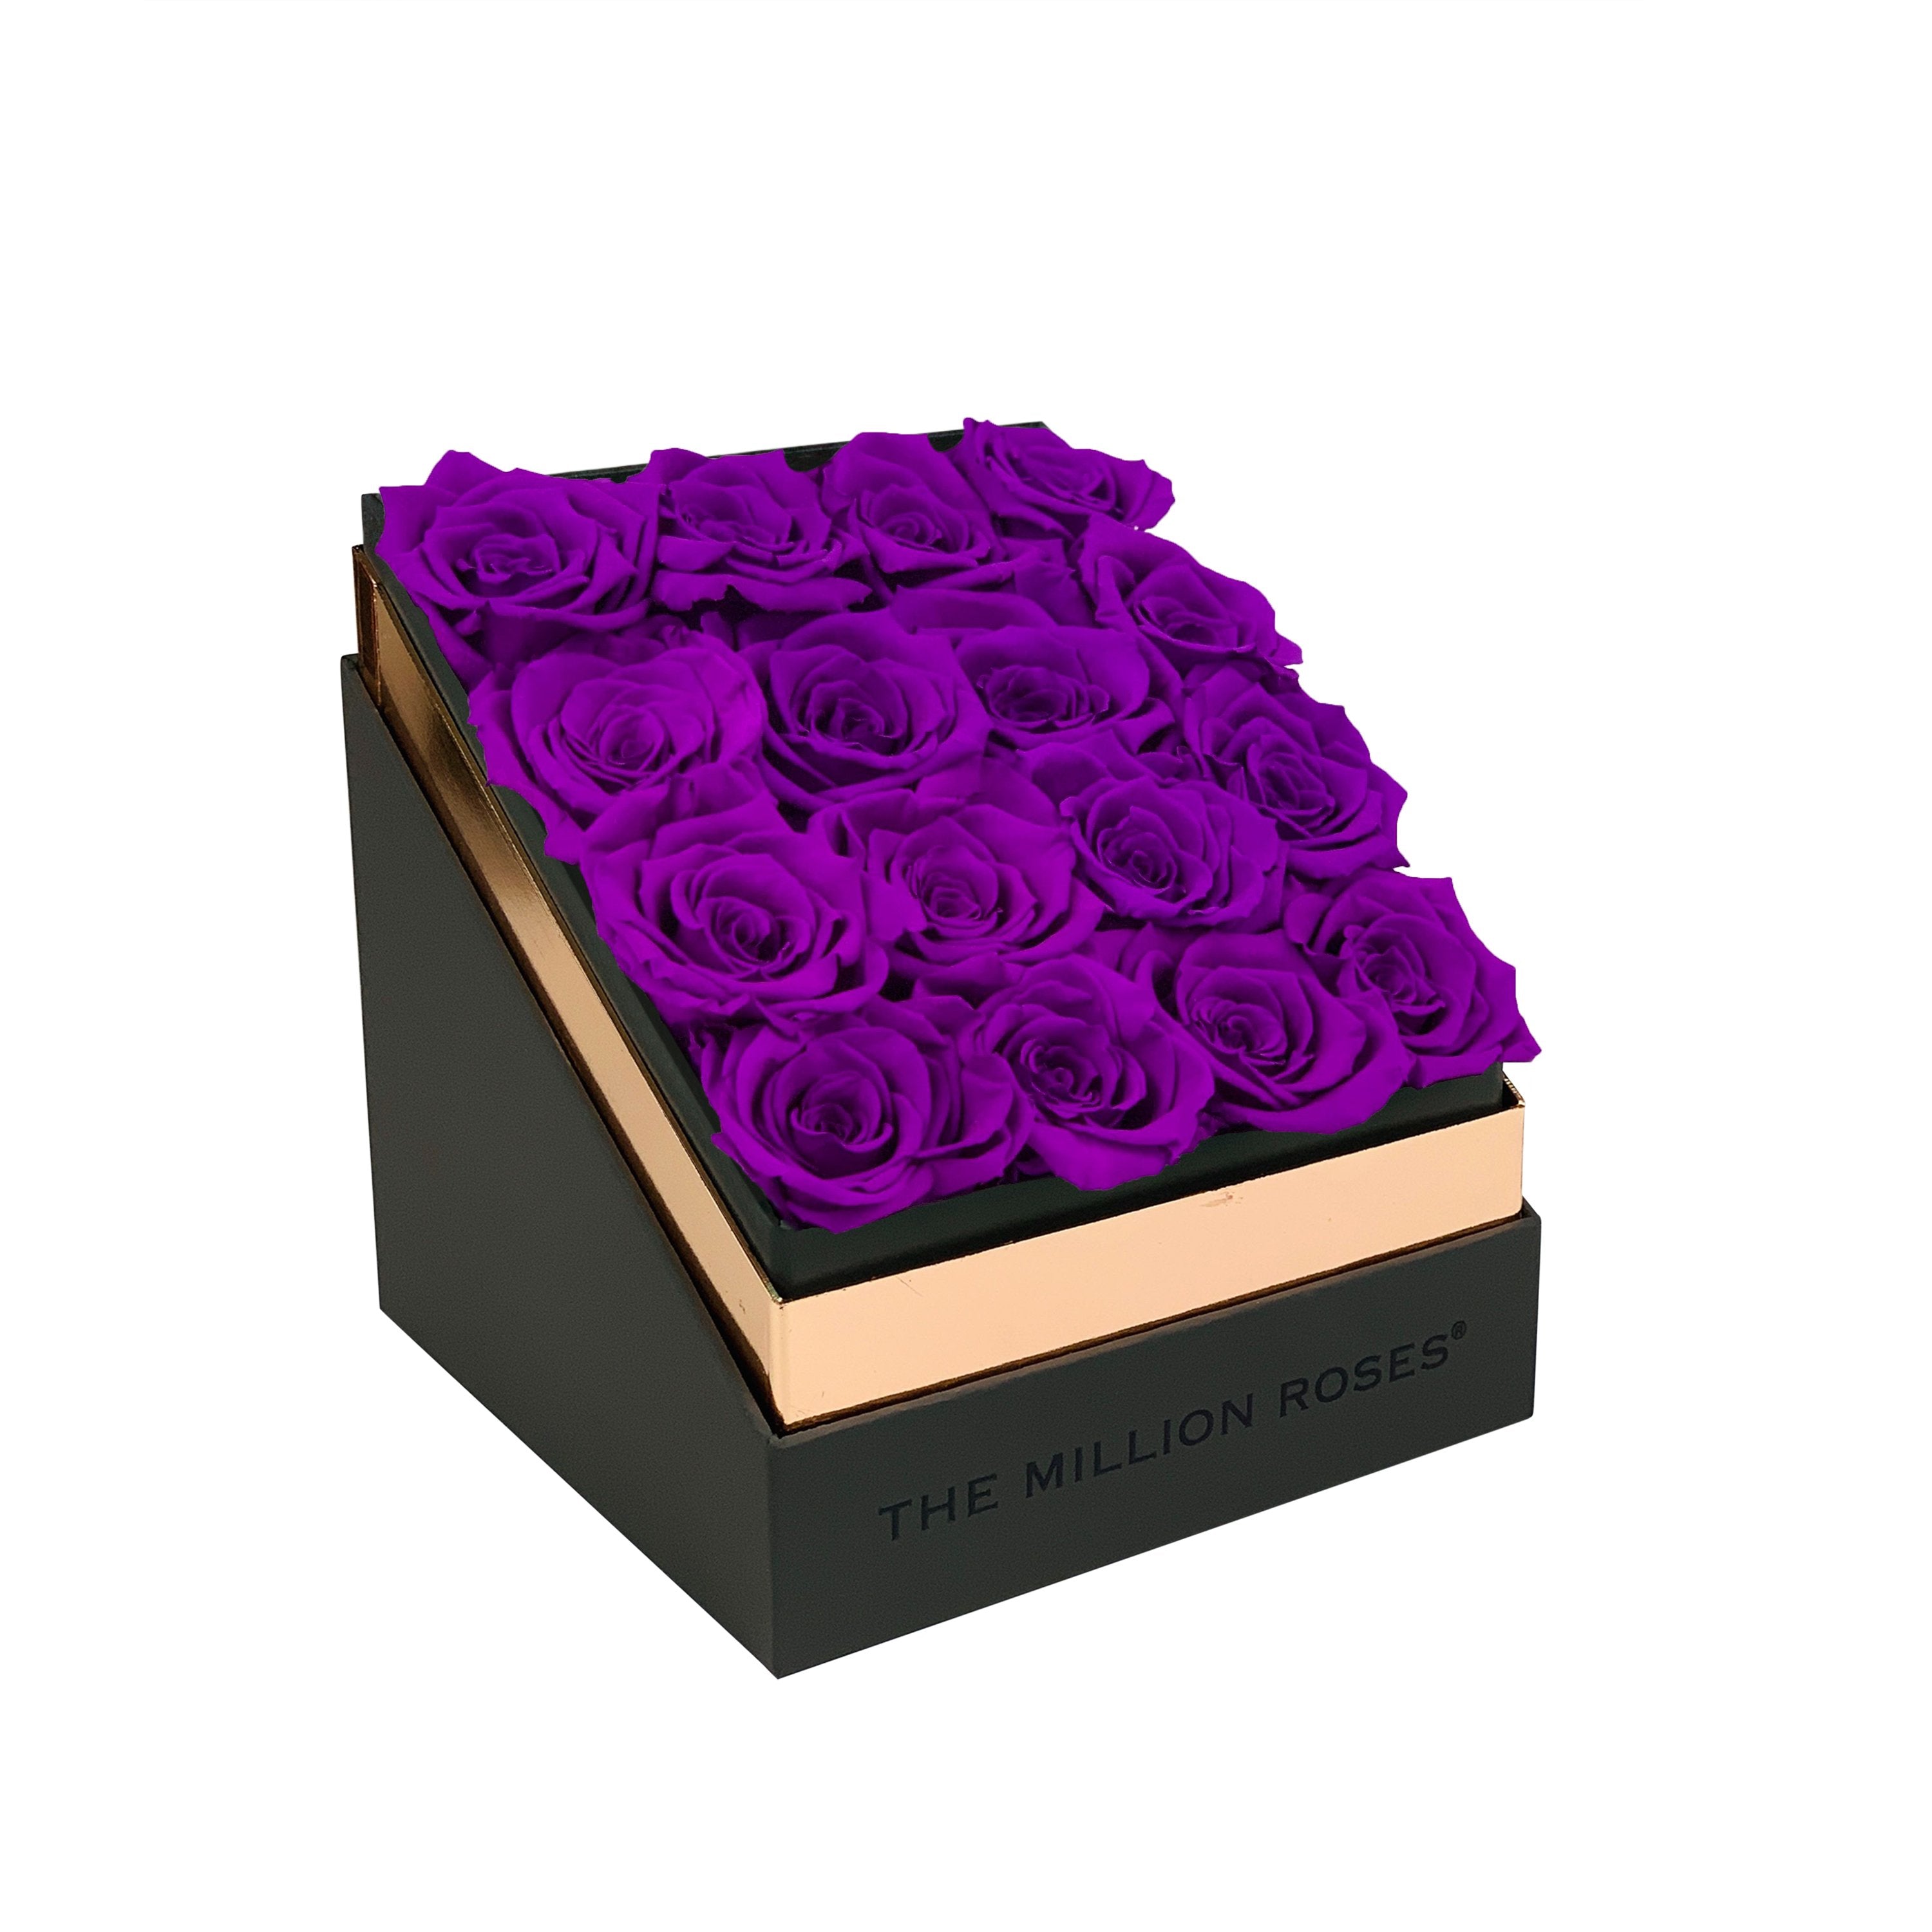 The Square - Gray Box - Bright Purple Roses